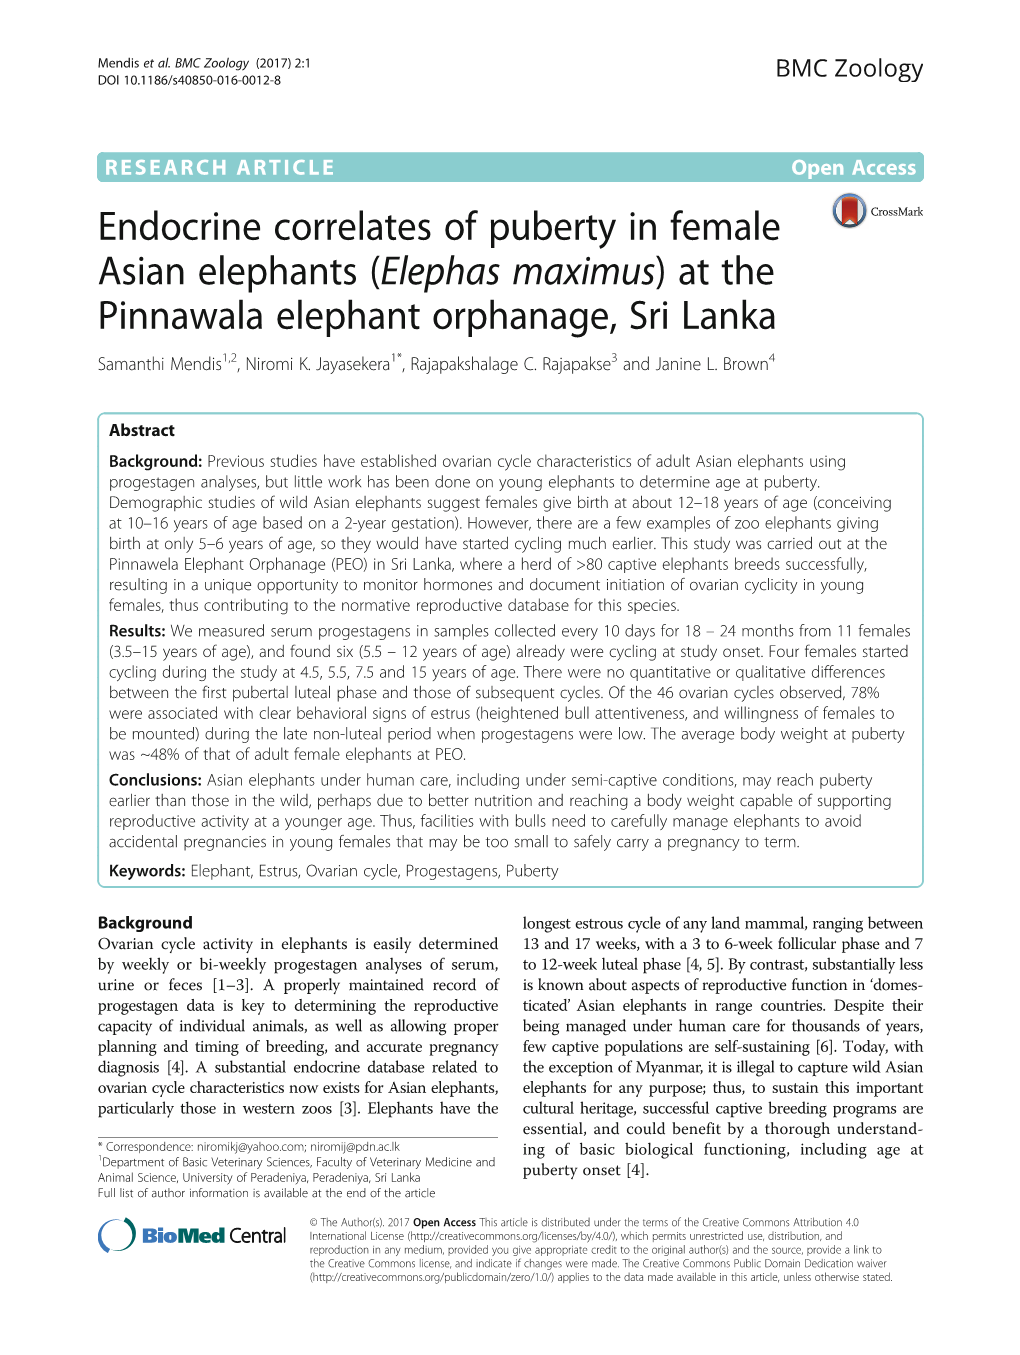 Endocrine Correlates of Puberty in Female Asian Elephants (Elephas Maximus) at the Pinnawala Elephant Orphanage, Sri Lanka Samanthi Mendis1,2, Niromi K